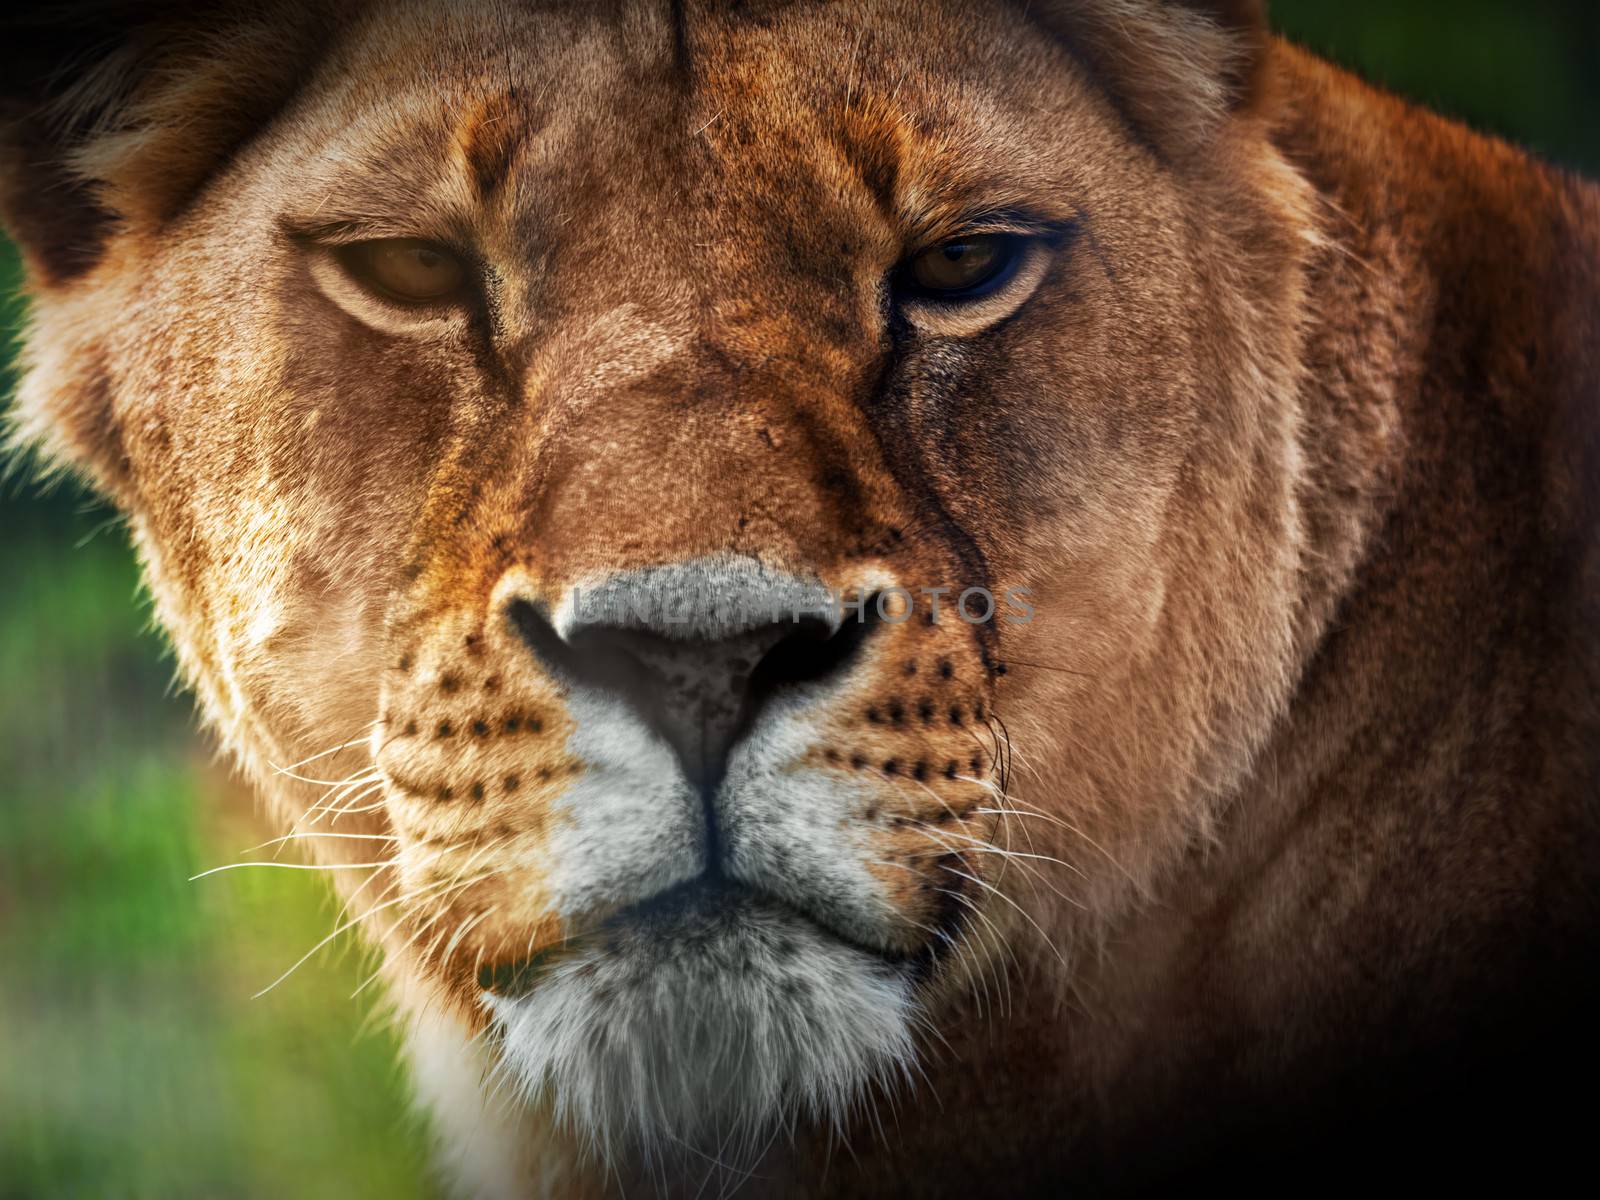 Lioness portrait close-up, front view